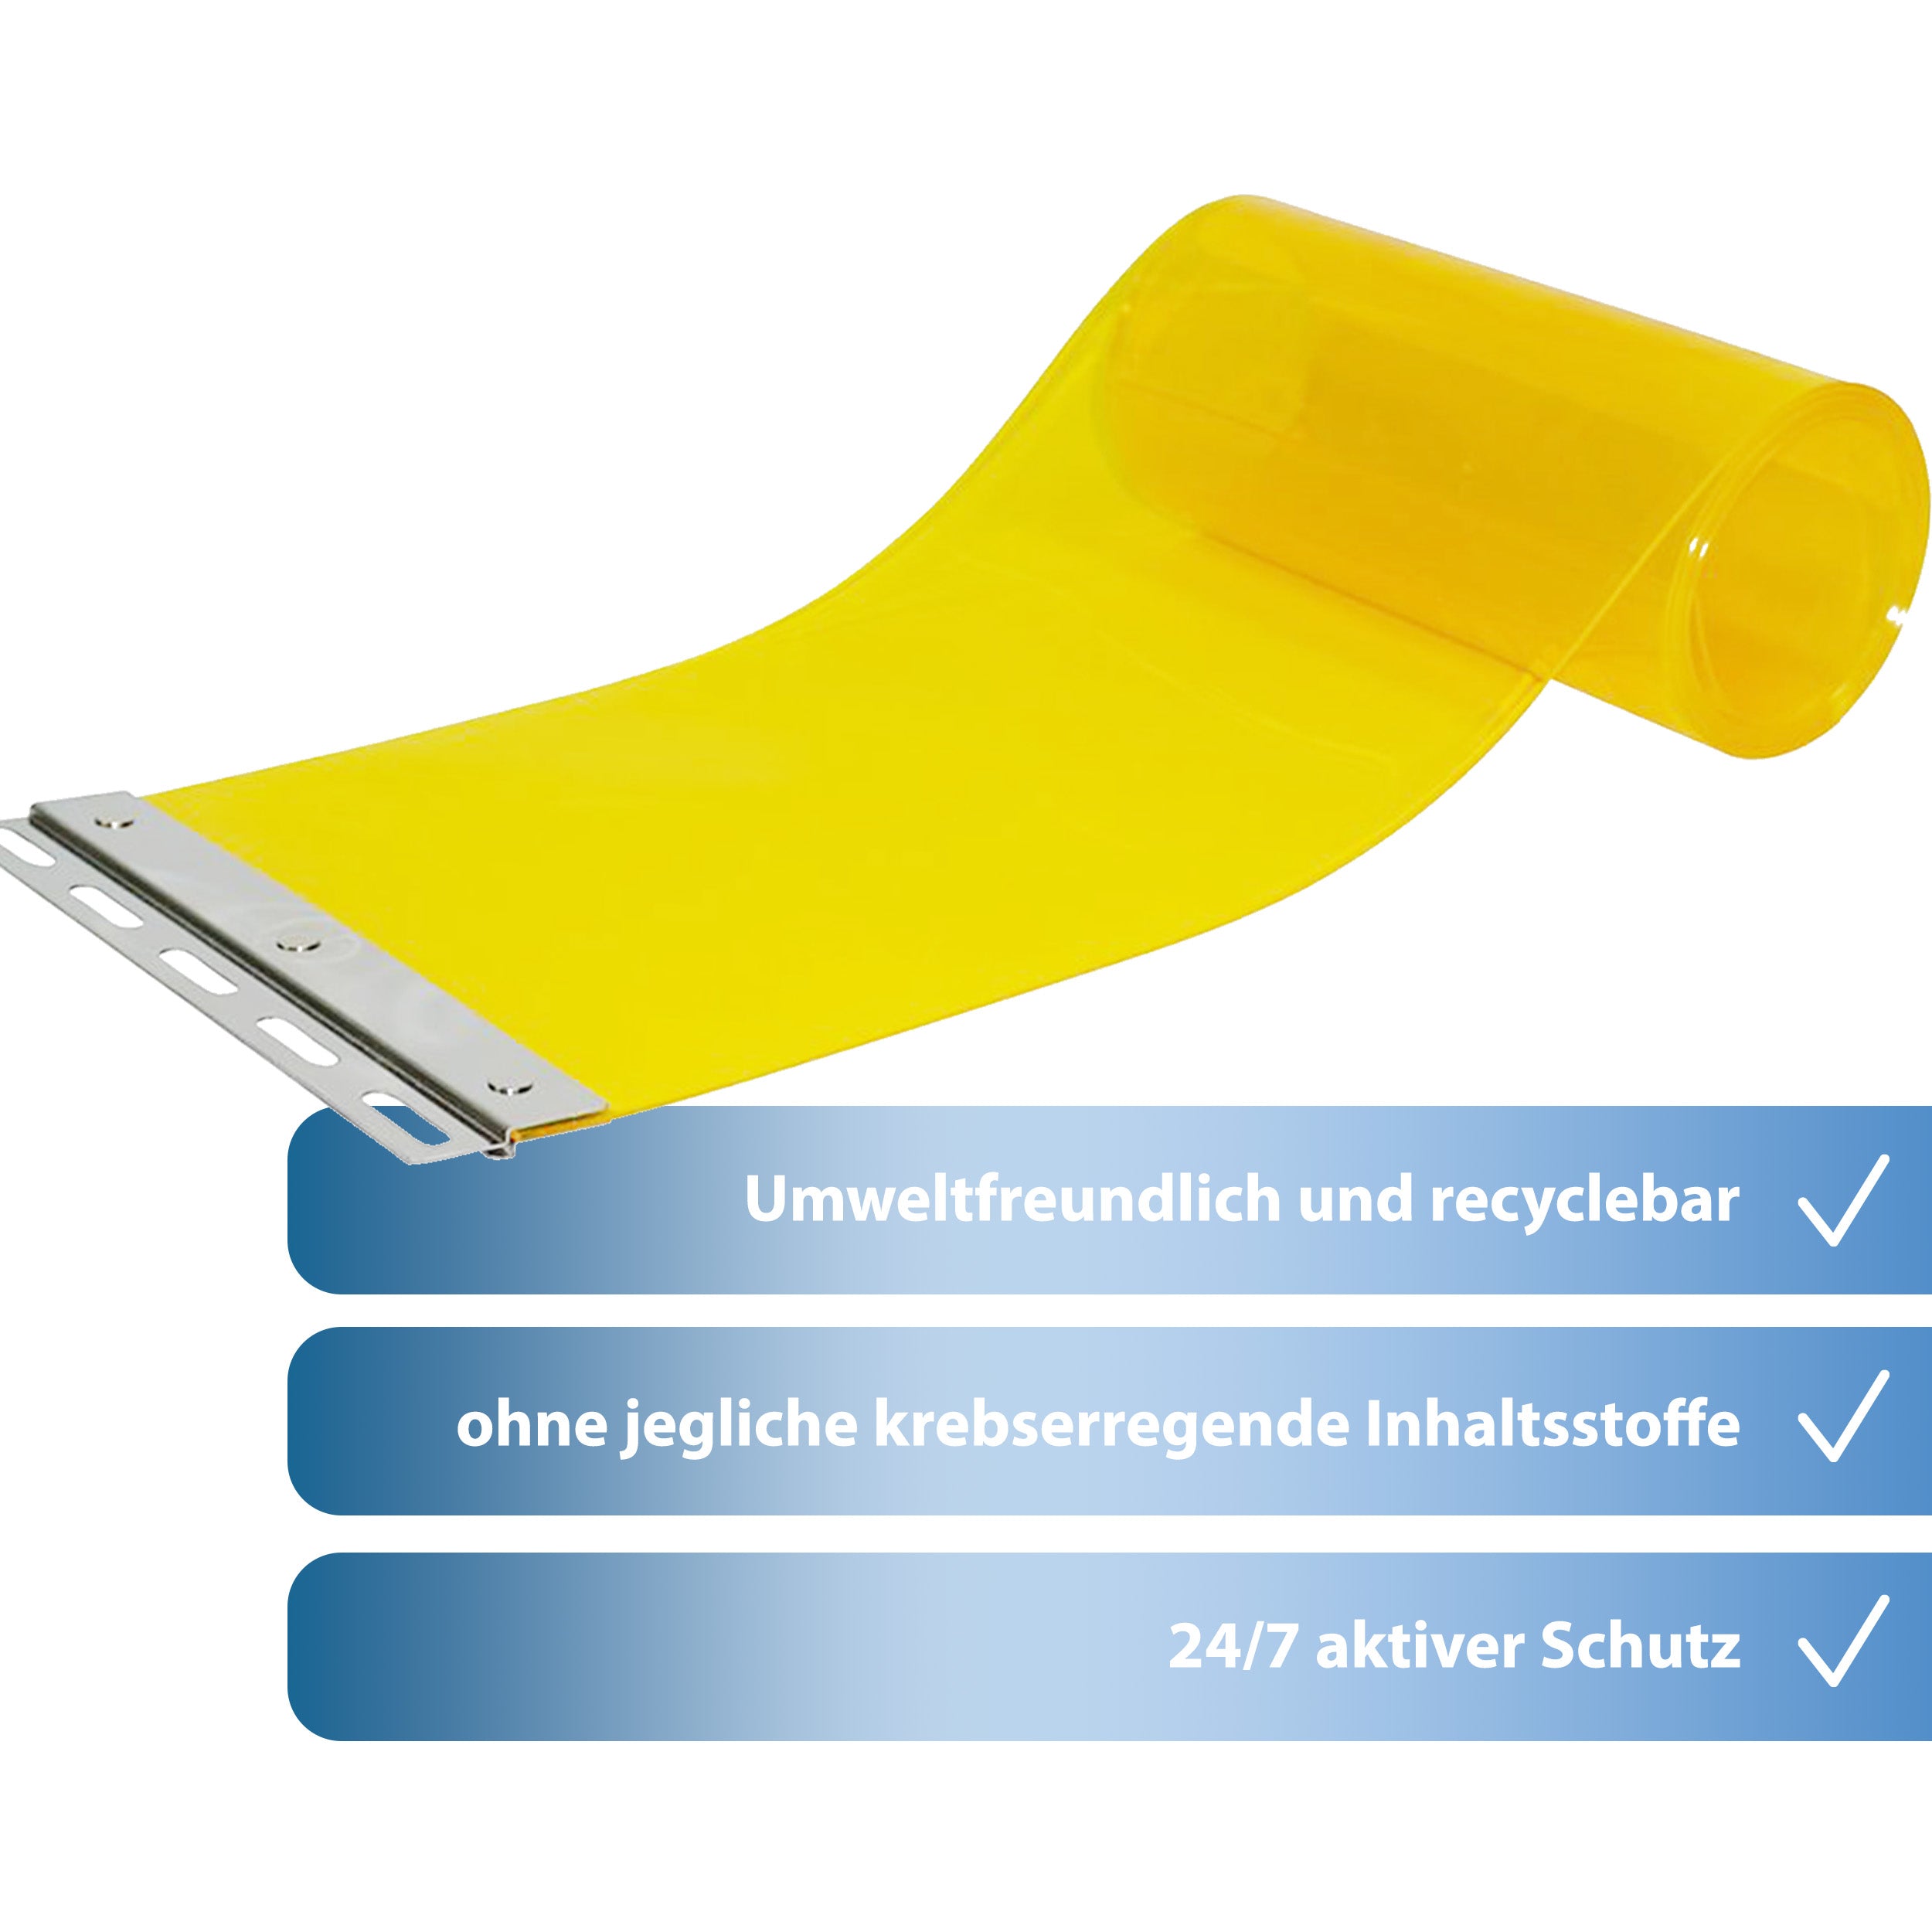 STALLVORHANG (gelb-transparent)